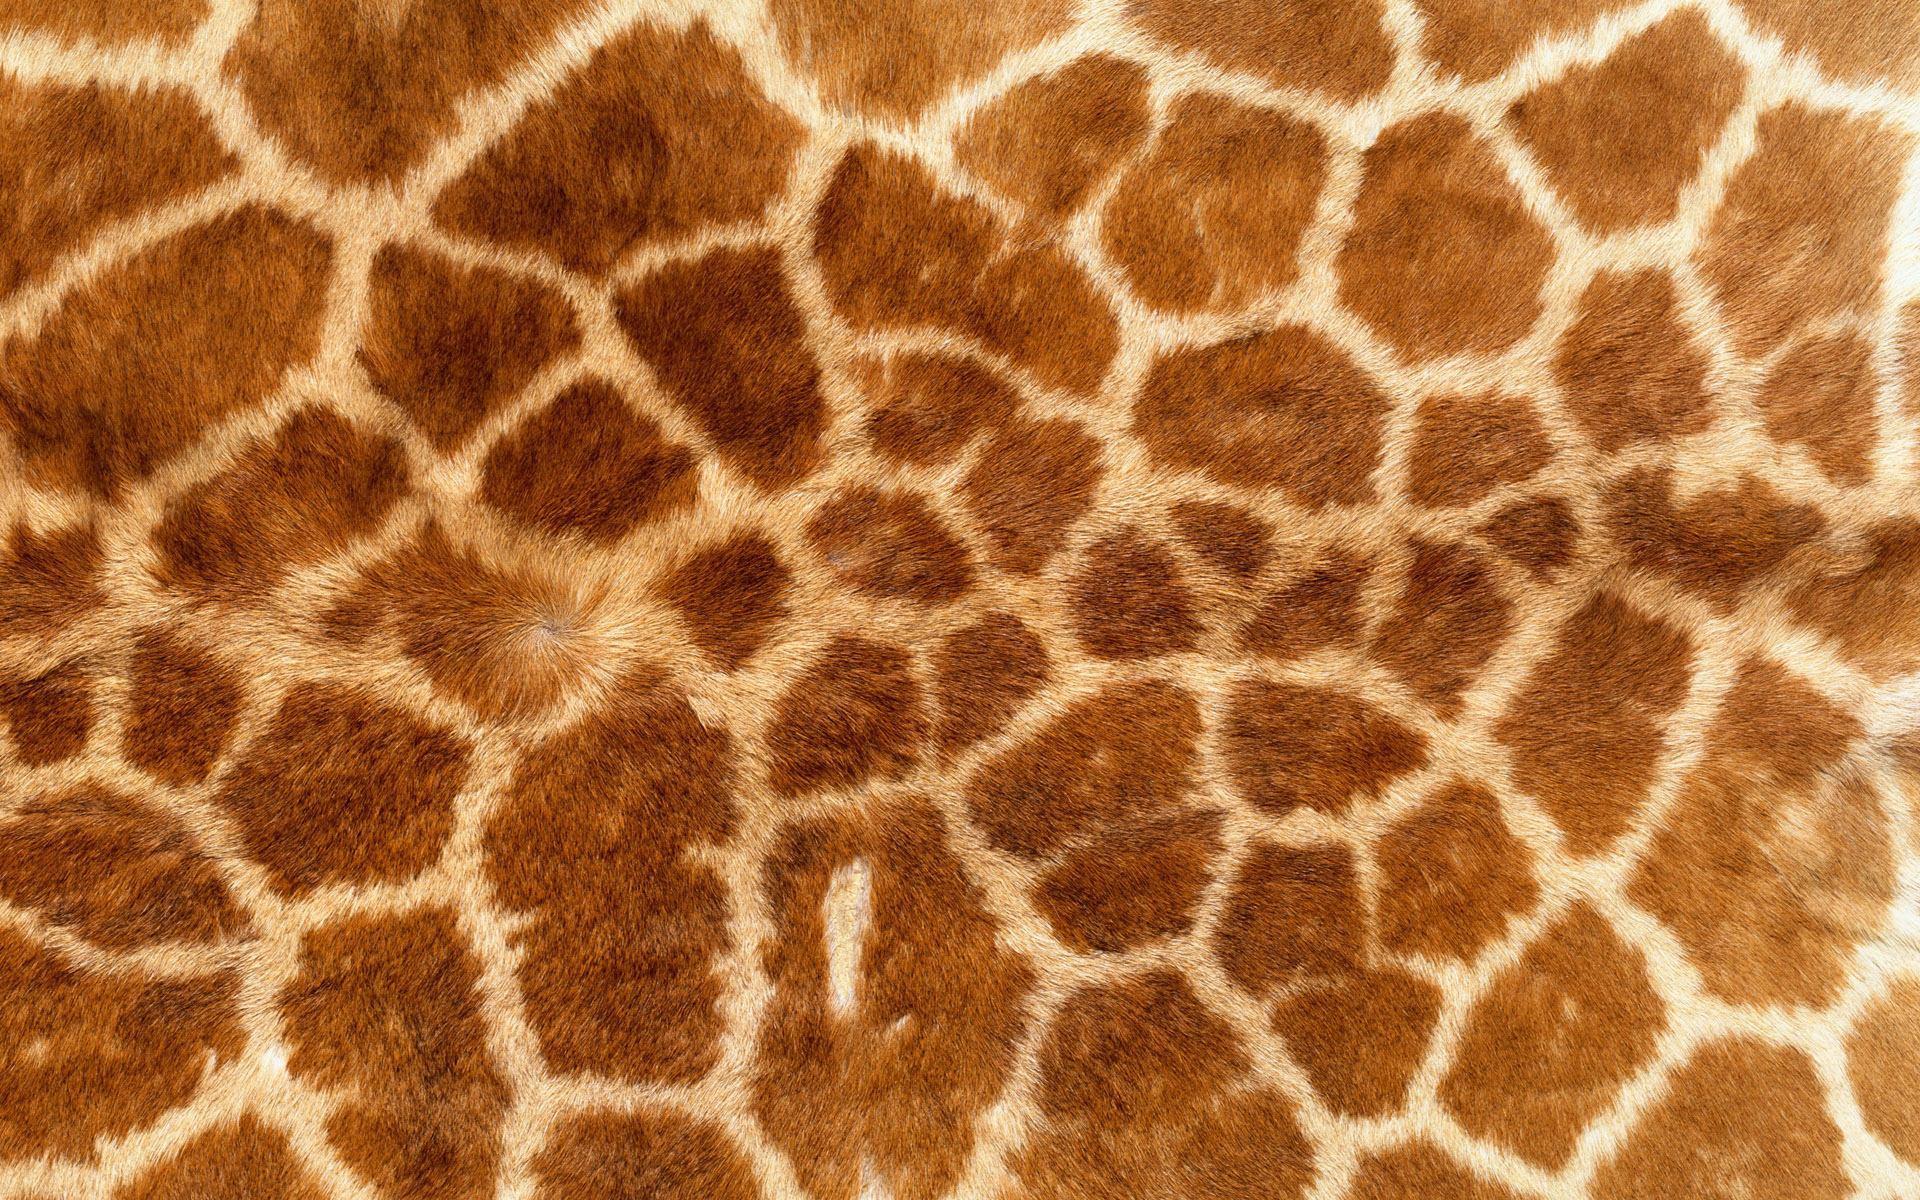 Animals background background desktop giraffe image pattern